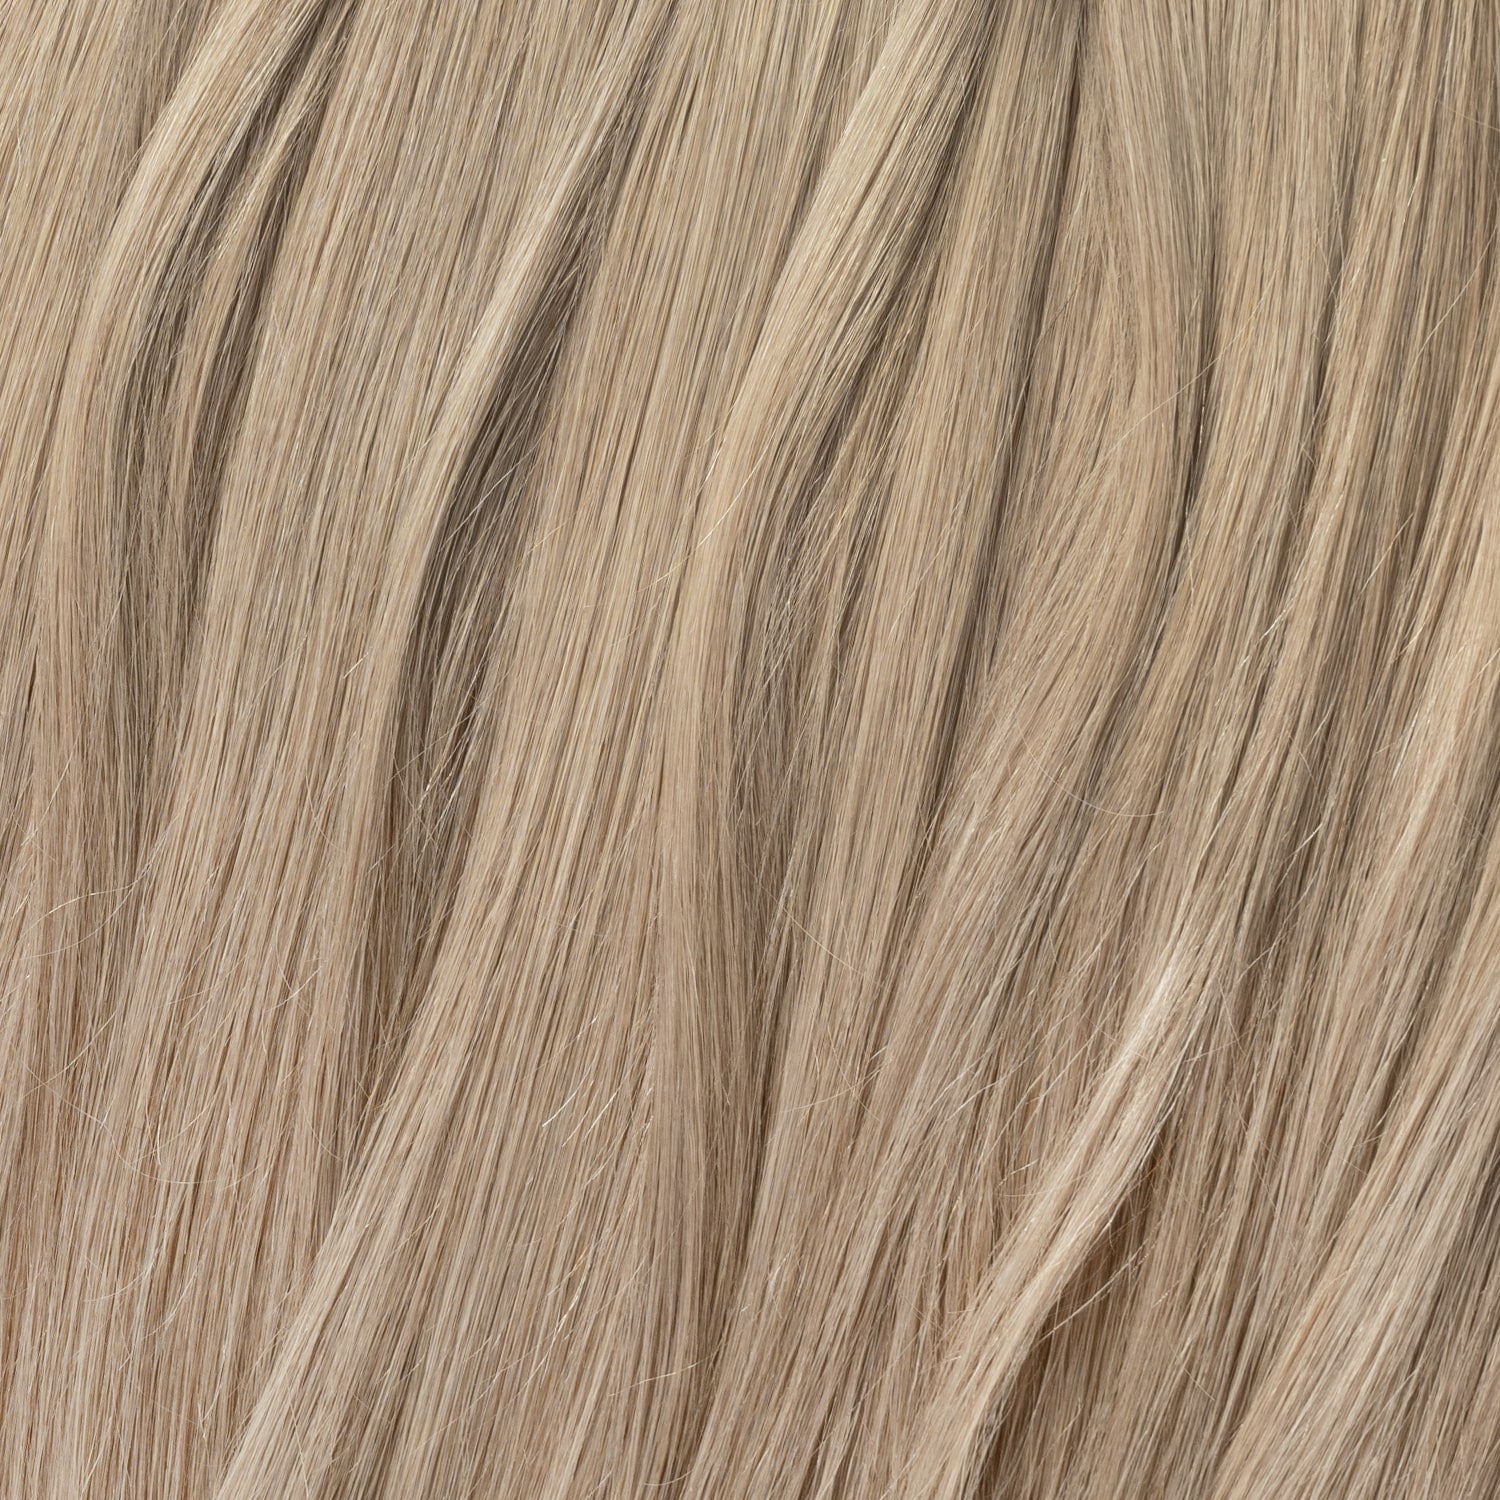 Nail Hair - Ash Blonde 17B